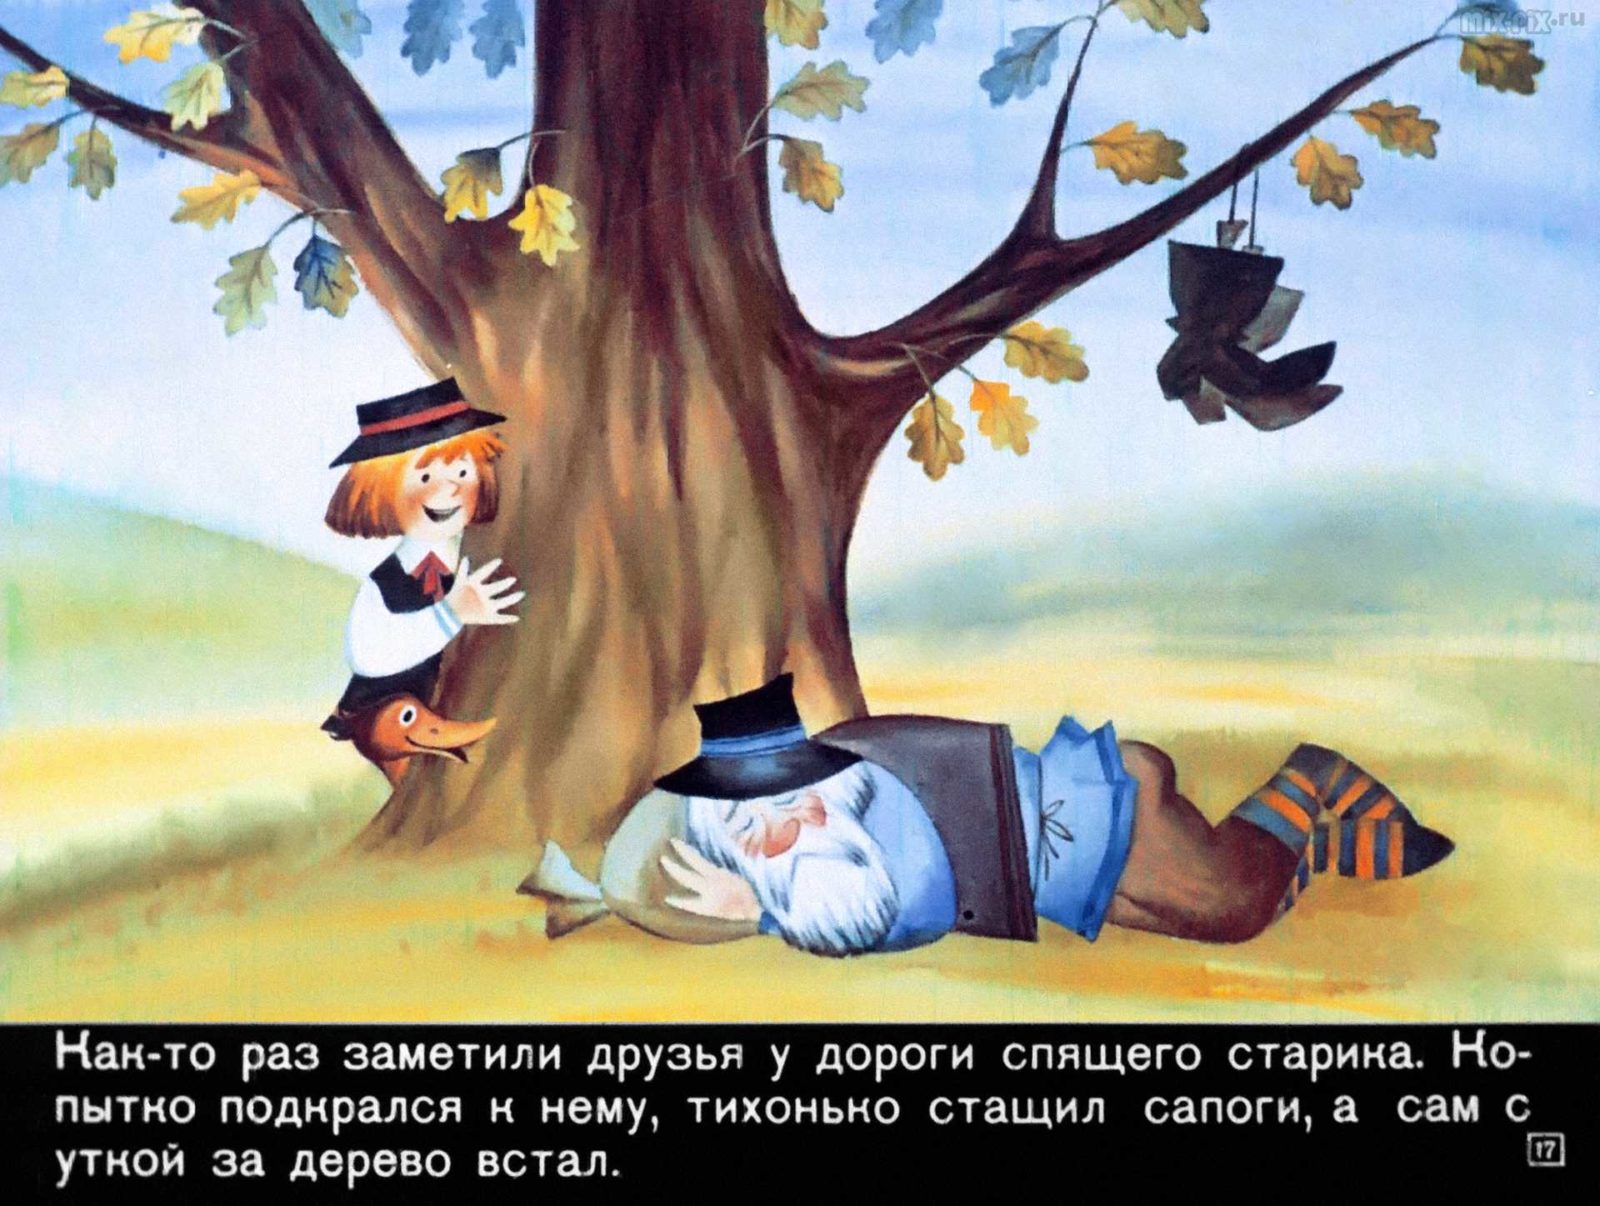 Сапожник Копытко и утка Кря (1972) 29